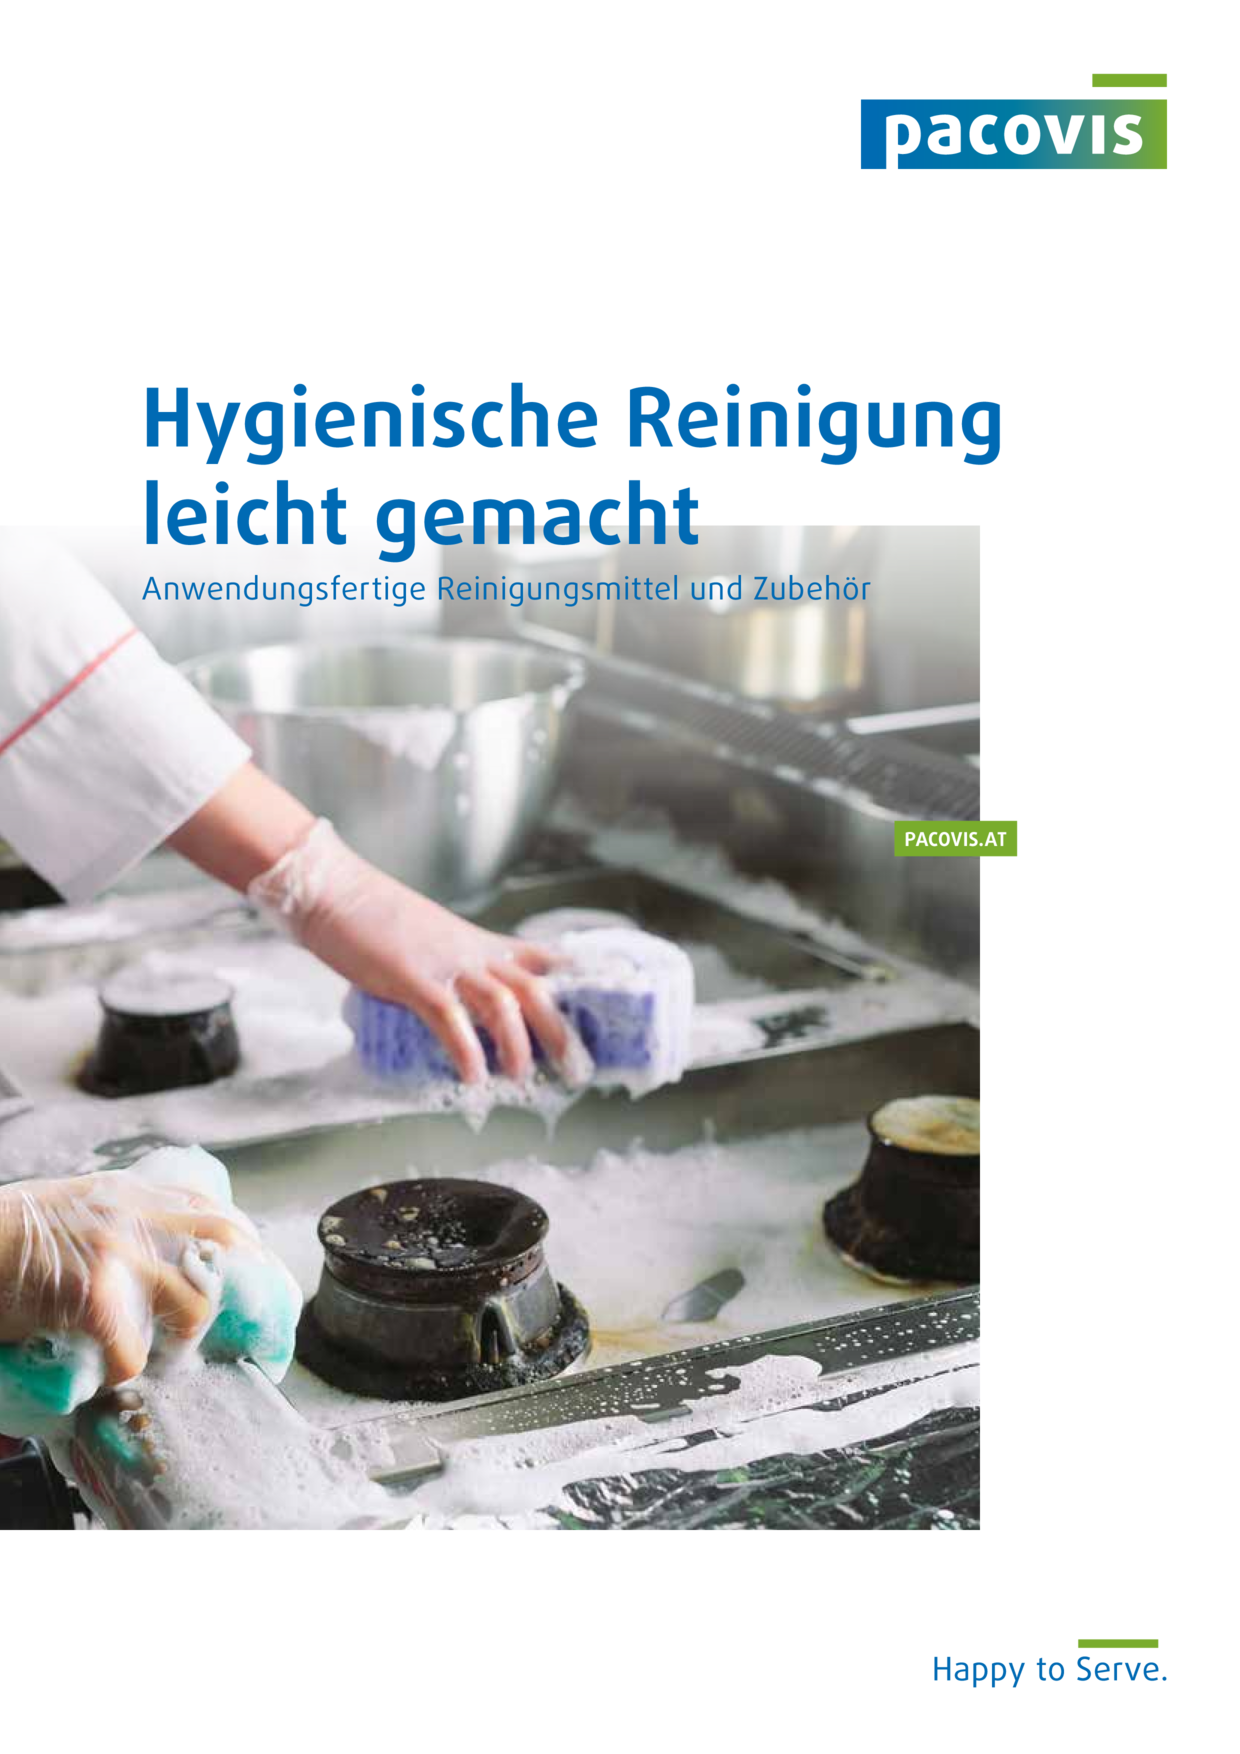 Hygienische Reinigung leicht gemacht, Österreich